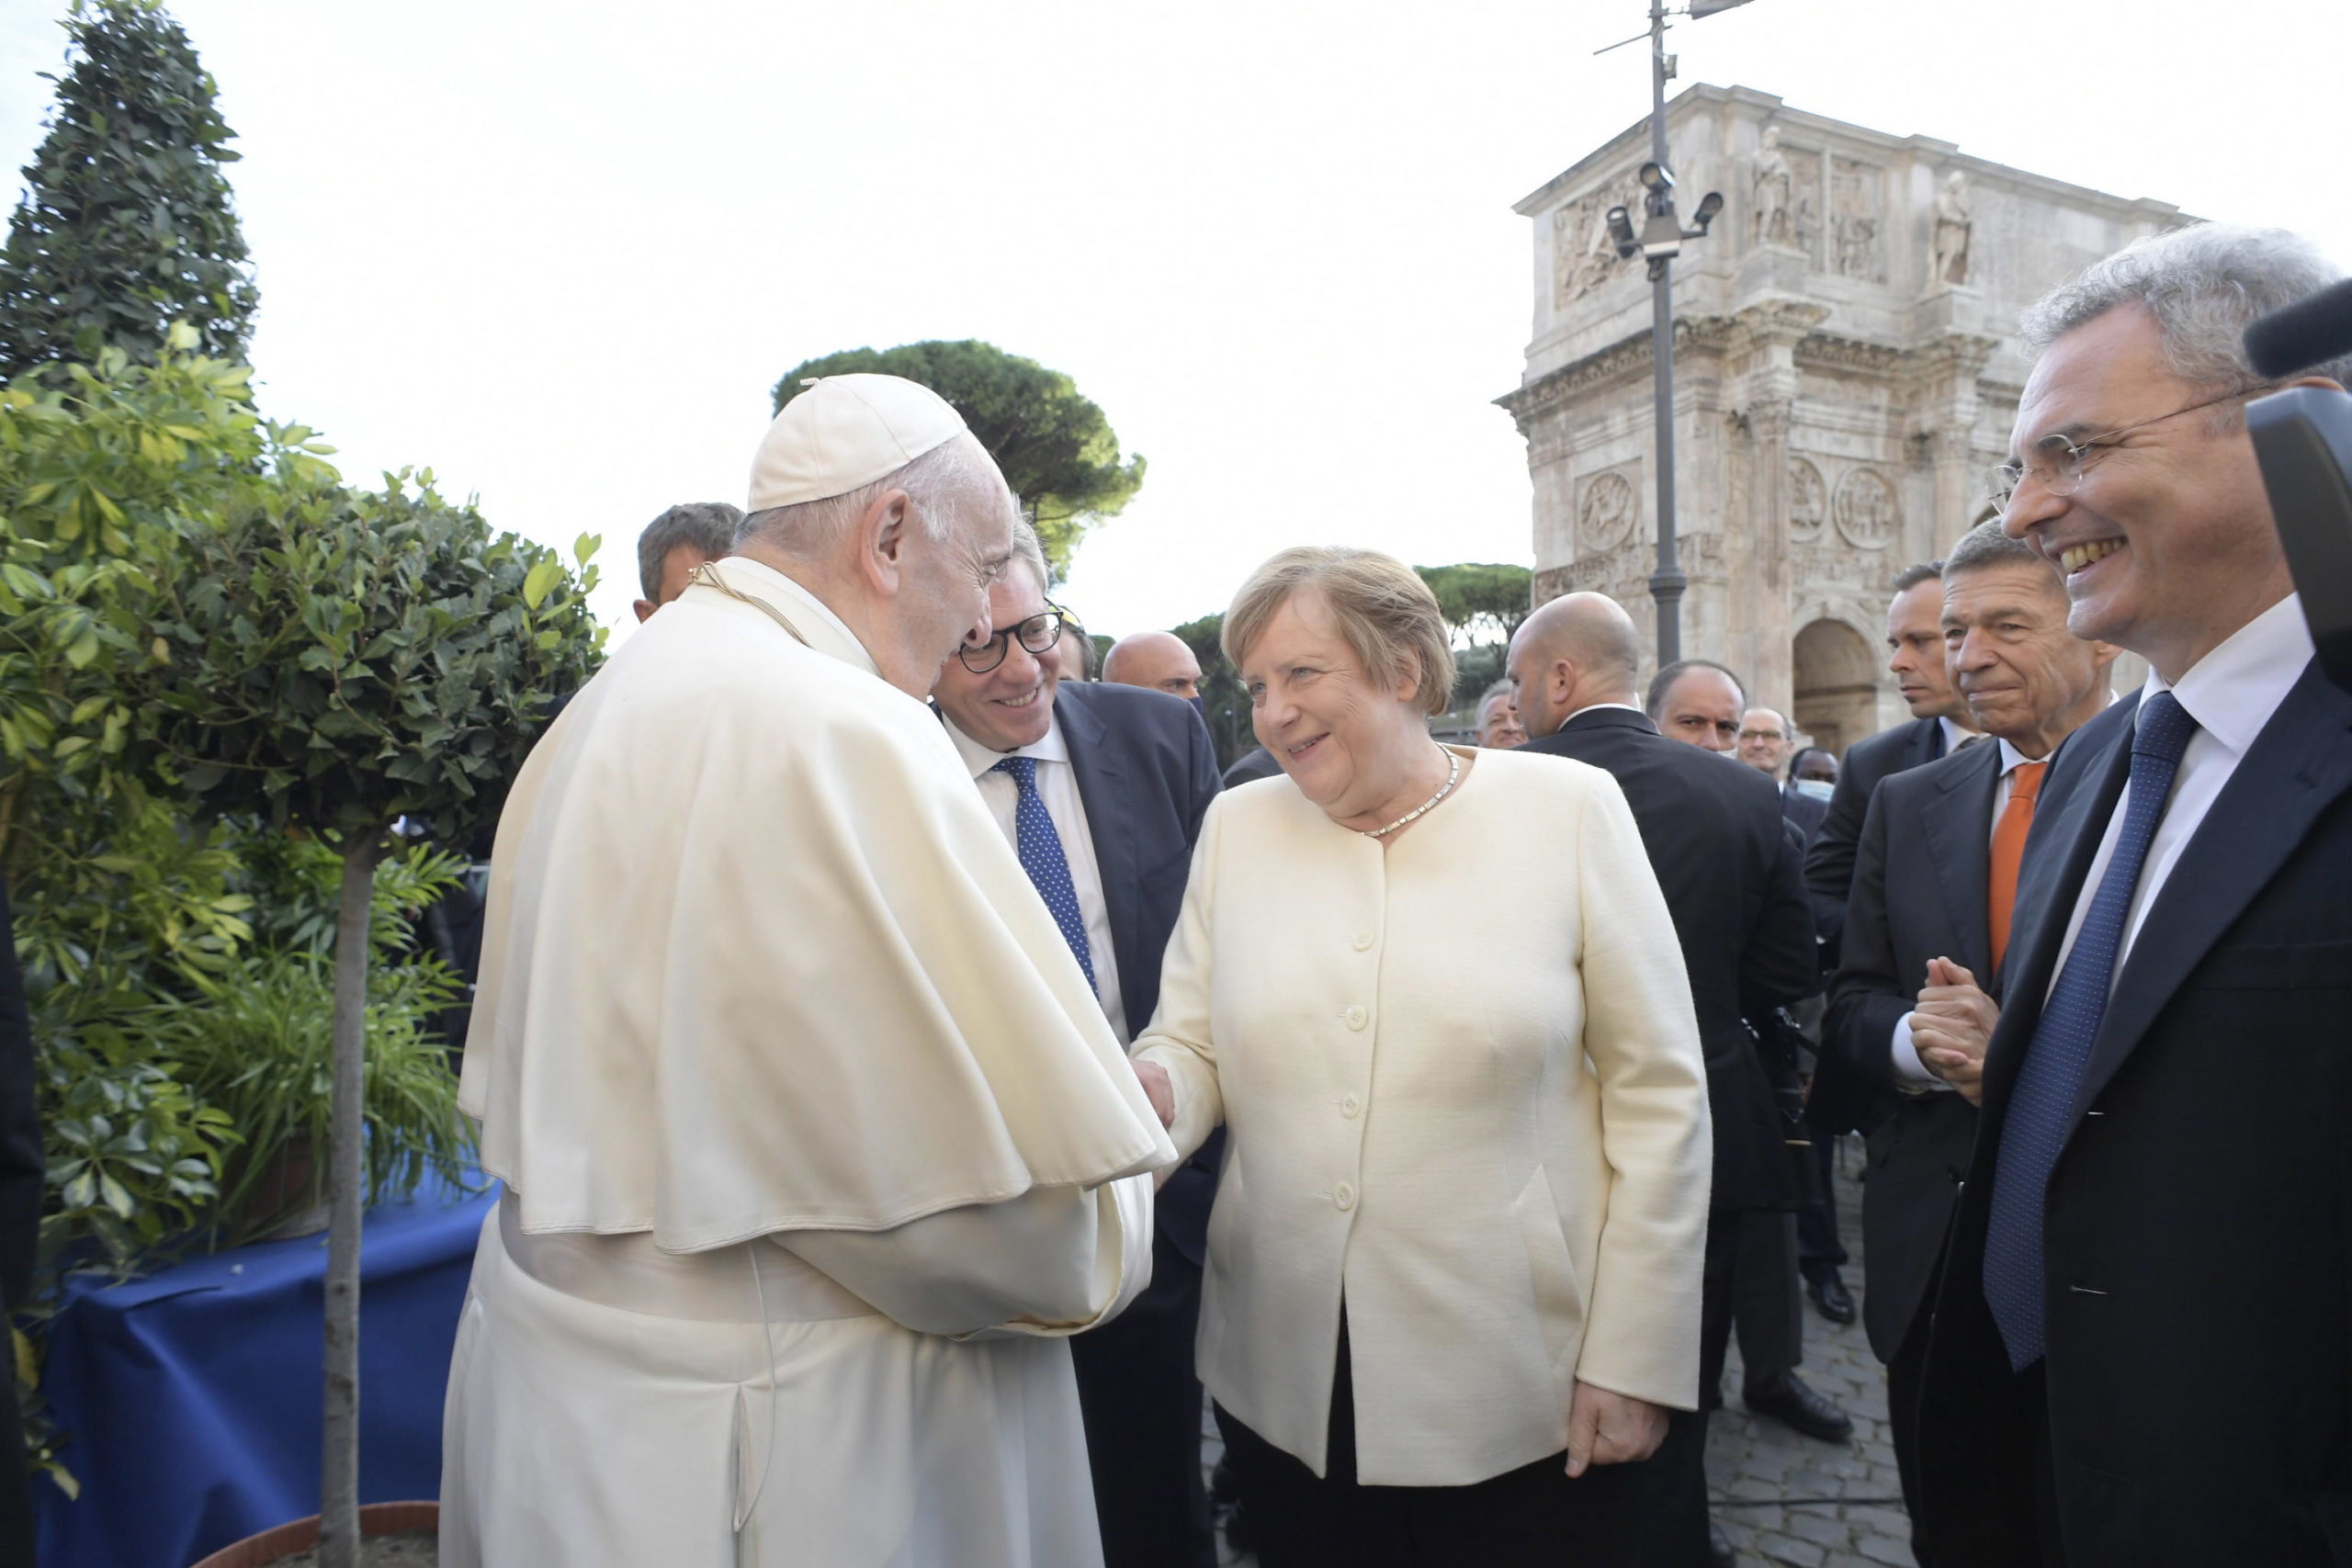 Il saluto cordiale tra Papa Francesco e la leader tedesca